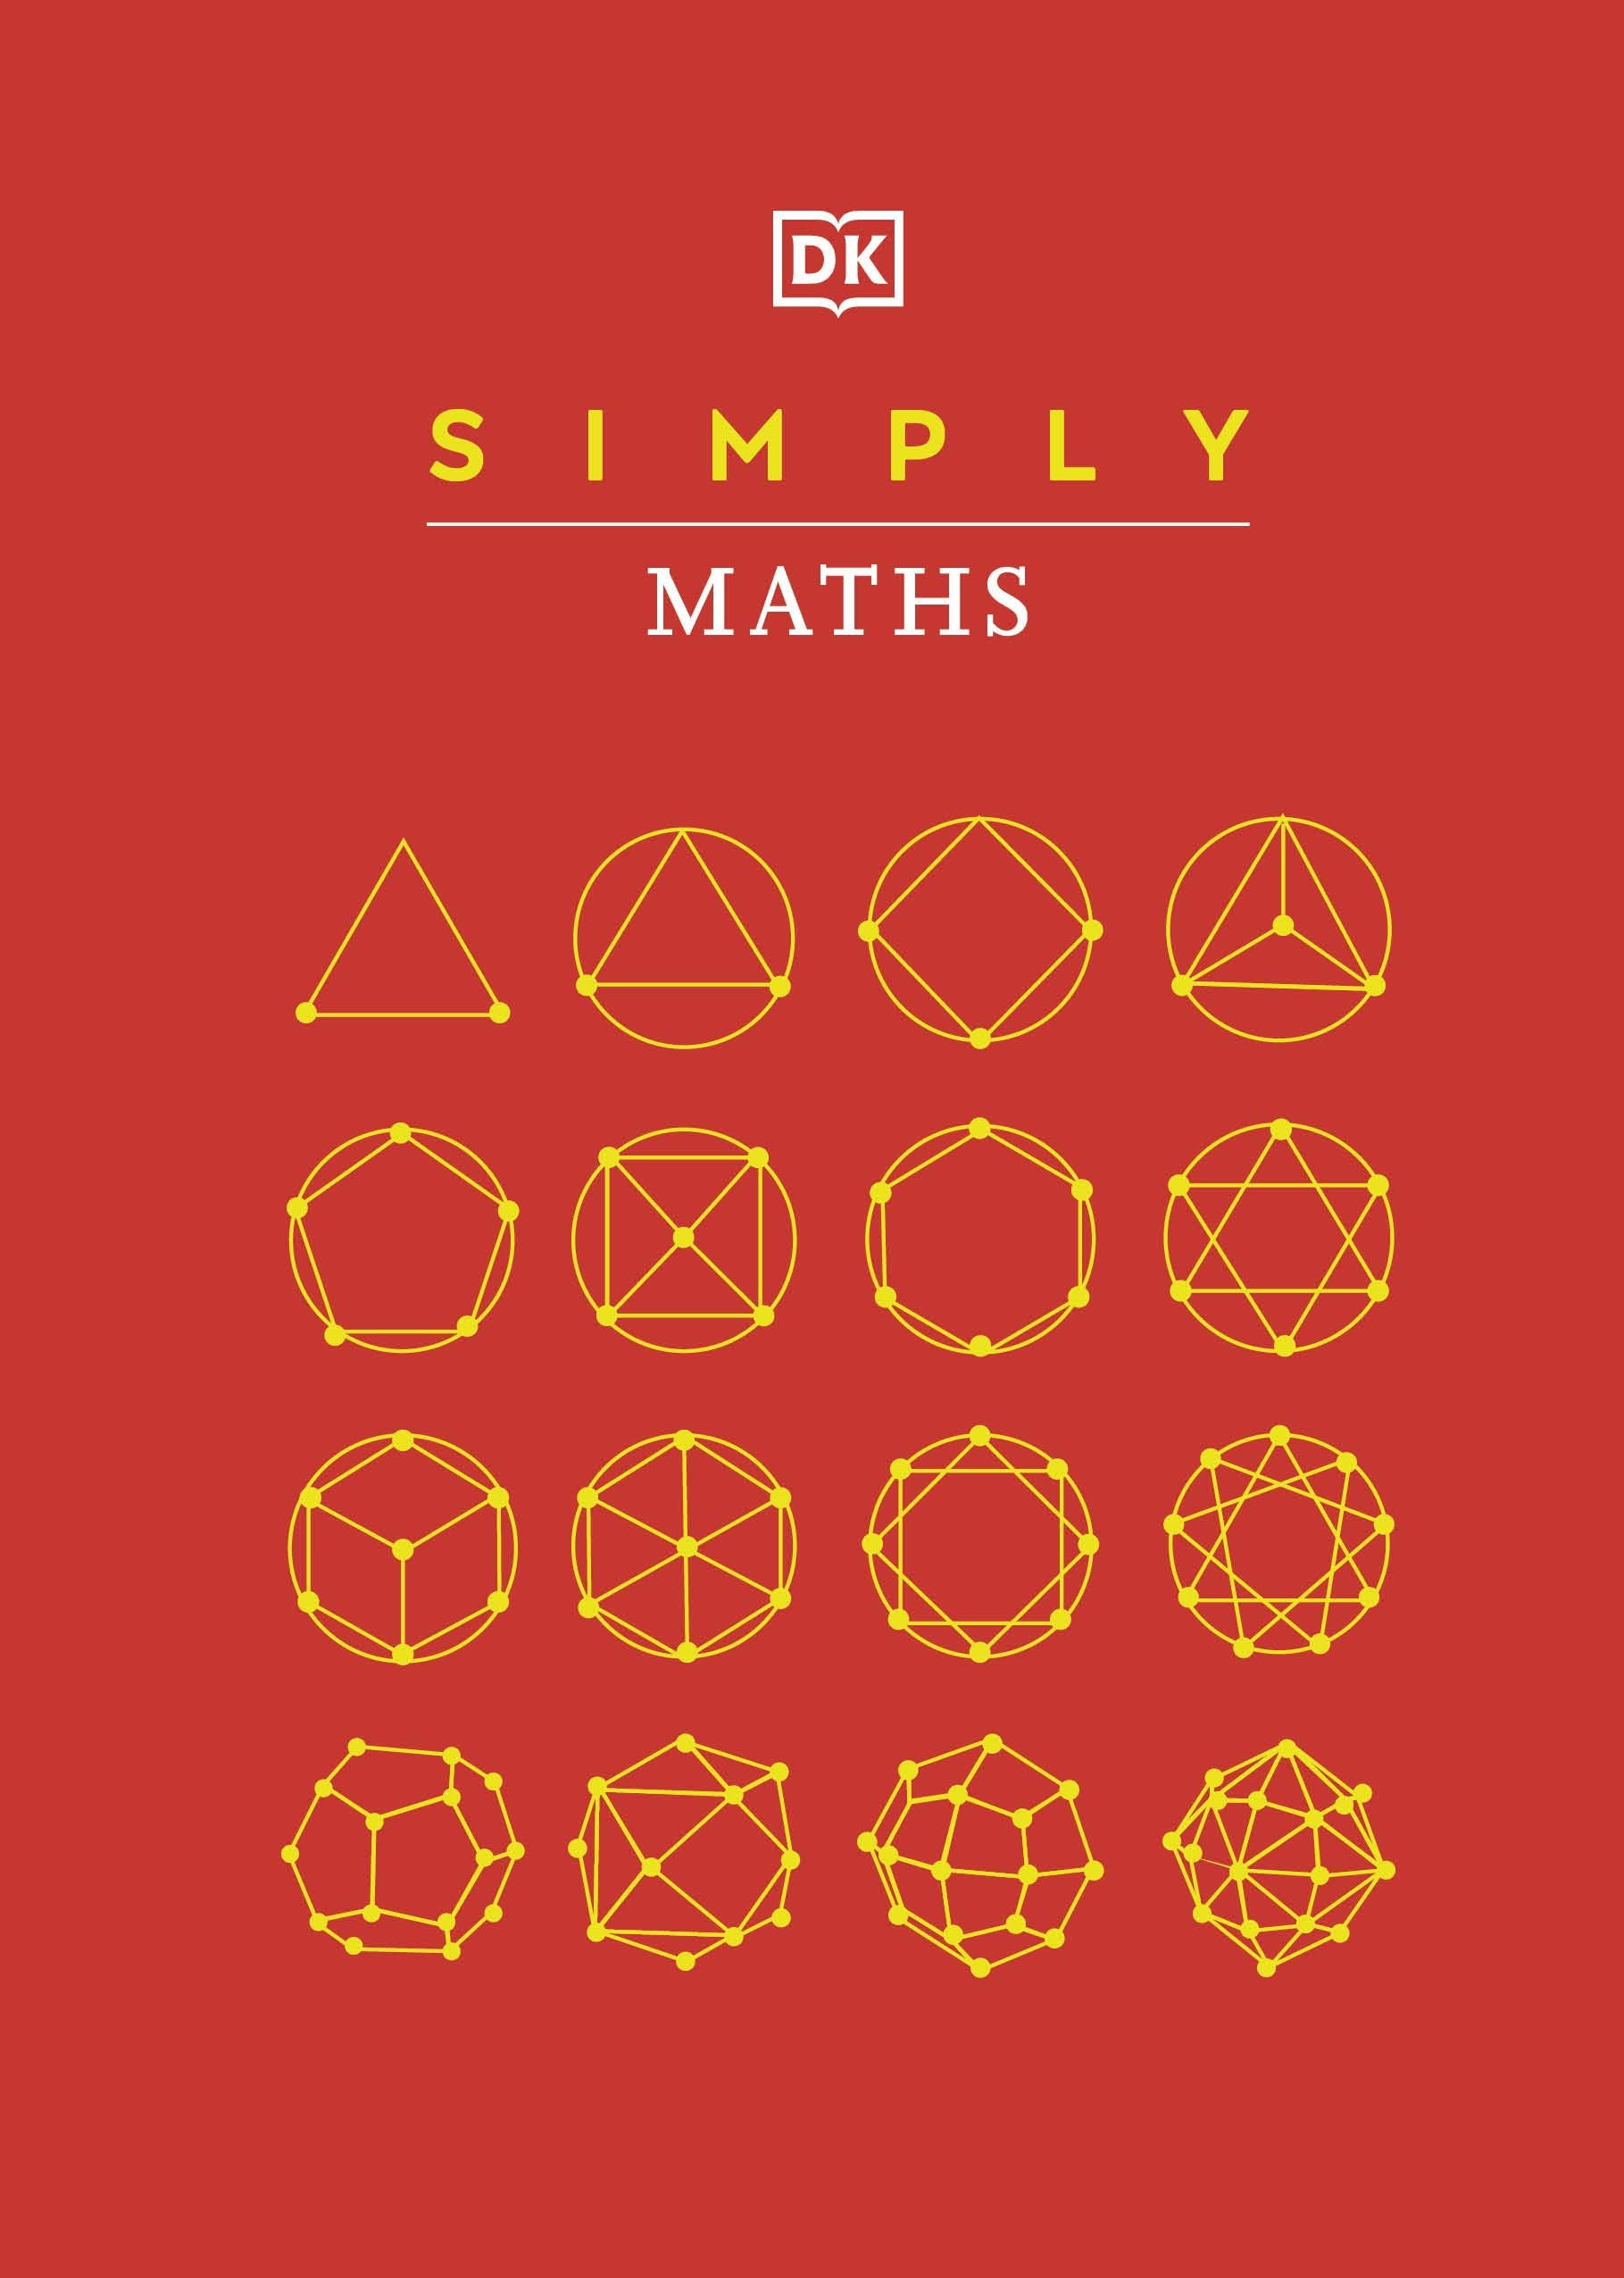 Simply Maths by DK